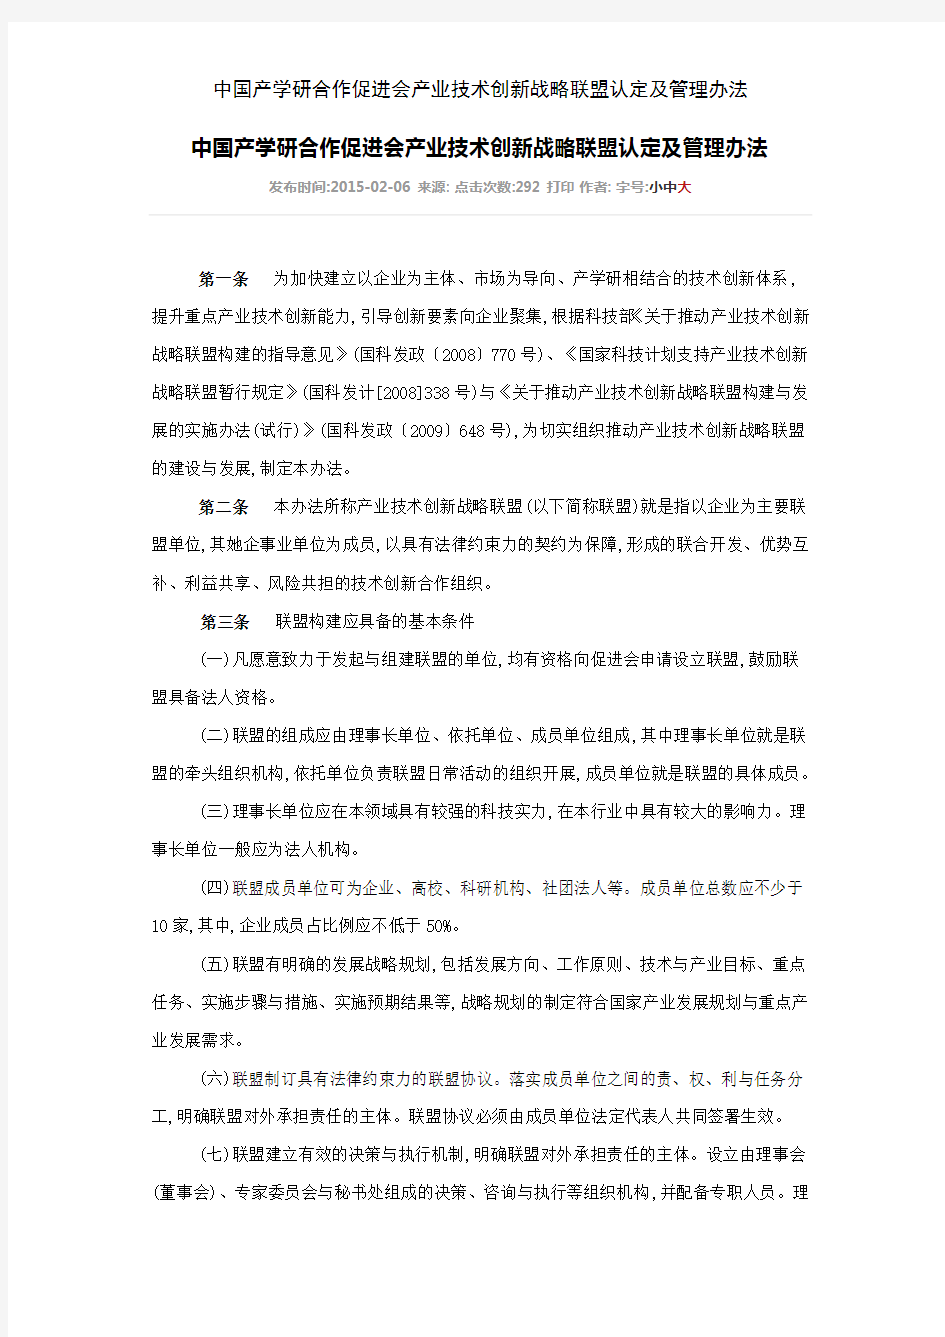 中国产学研合作促进会产业技术创新战略联盟认定及管理办法